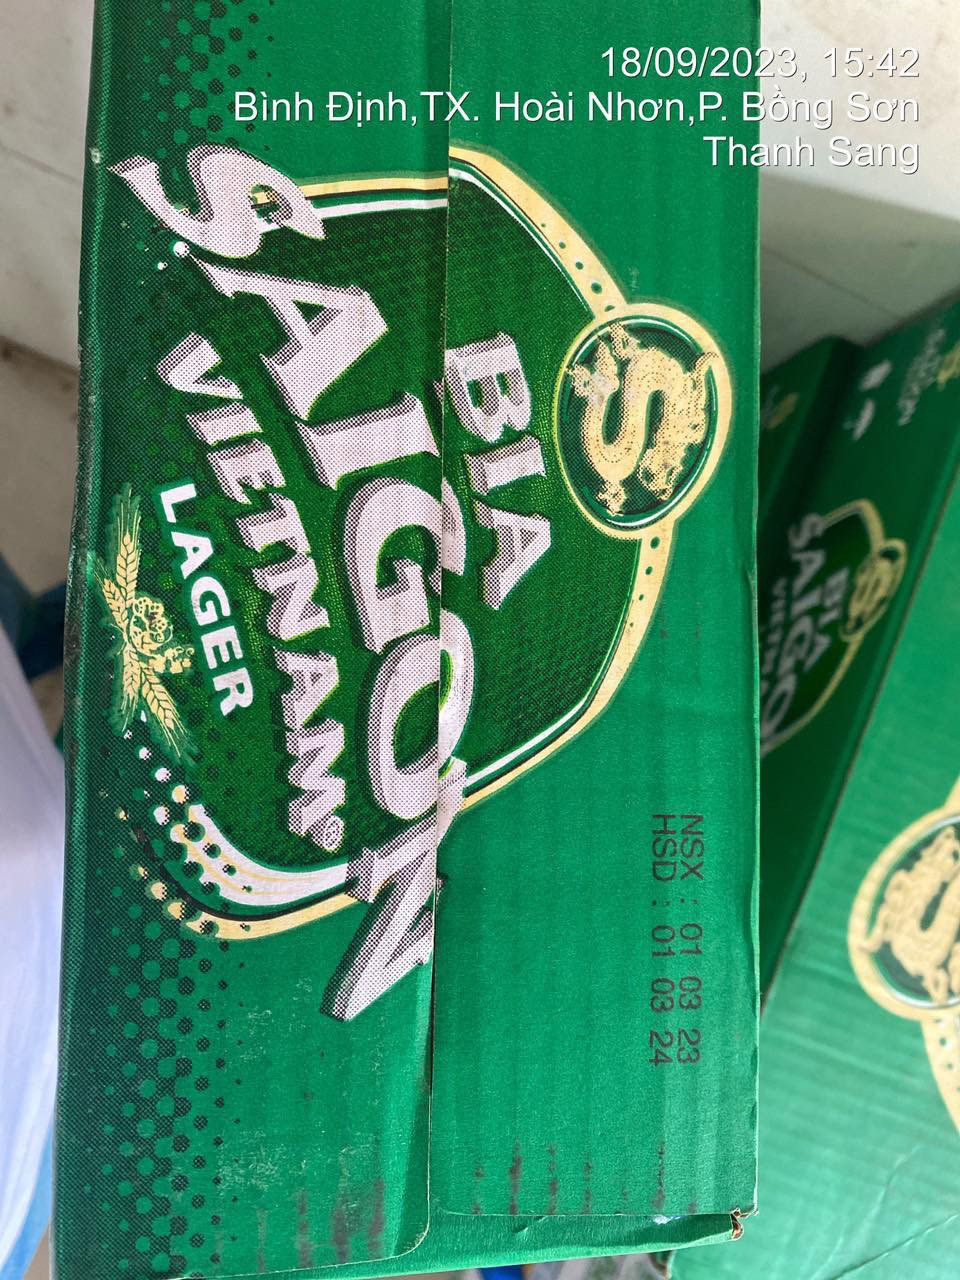 Bia Sài Gòn liên tục bị làm giả và câu chuyện bảo vệ thương hiệu - Ảnh 3.